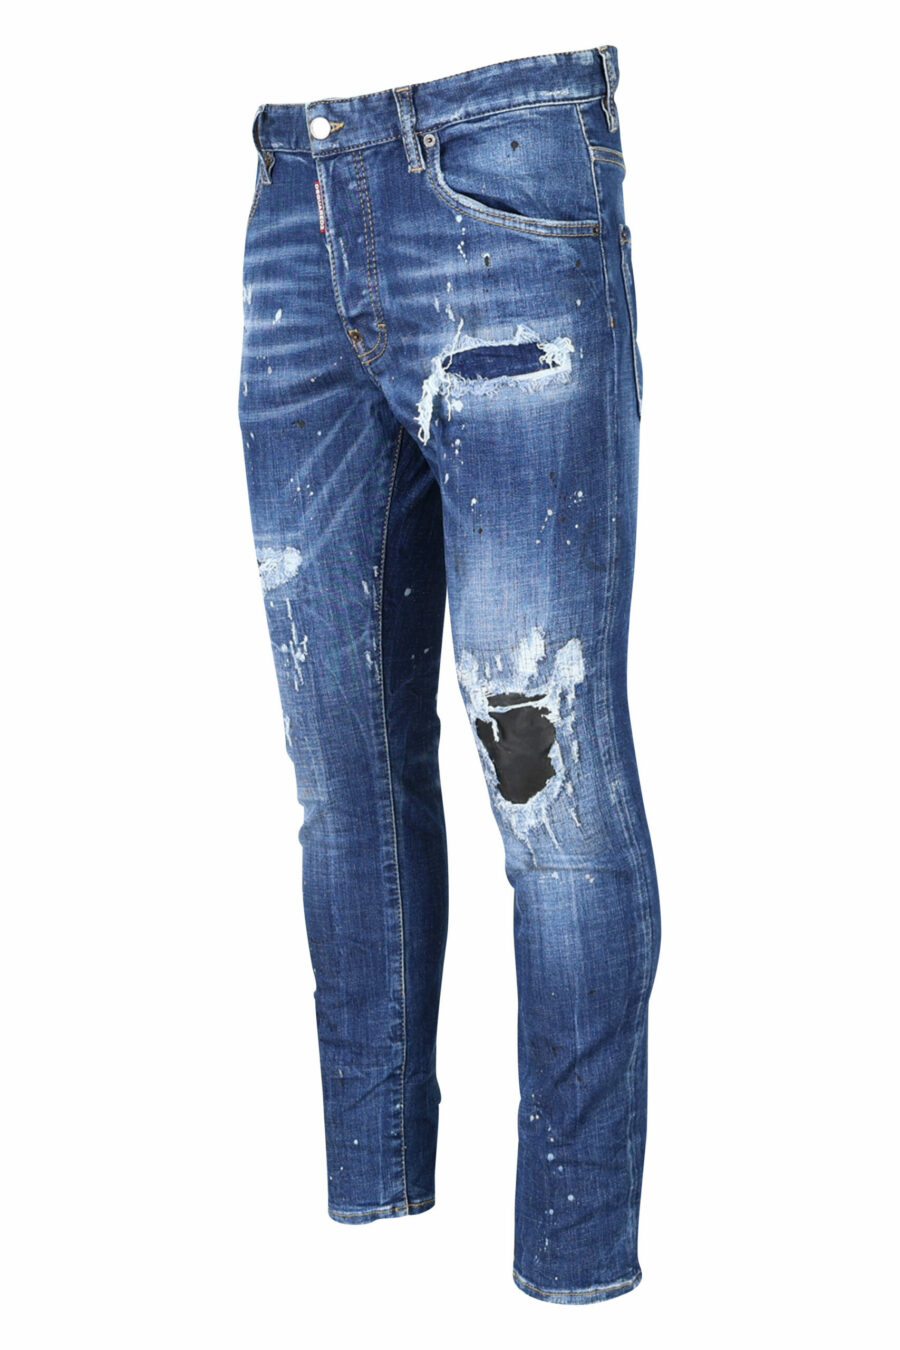 Calças de ganga "super twinkey jean" azuis desgastadas com rasgões pretos - 8054148124328 1 scaled